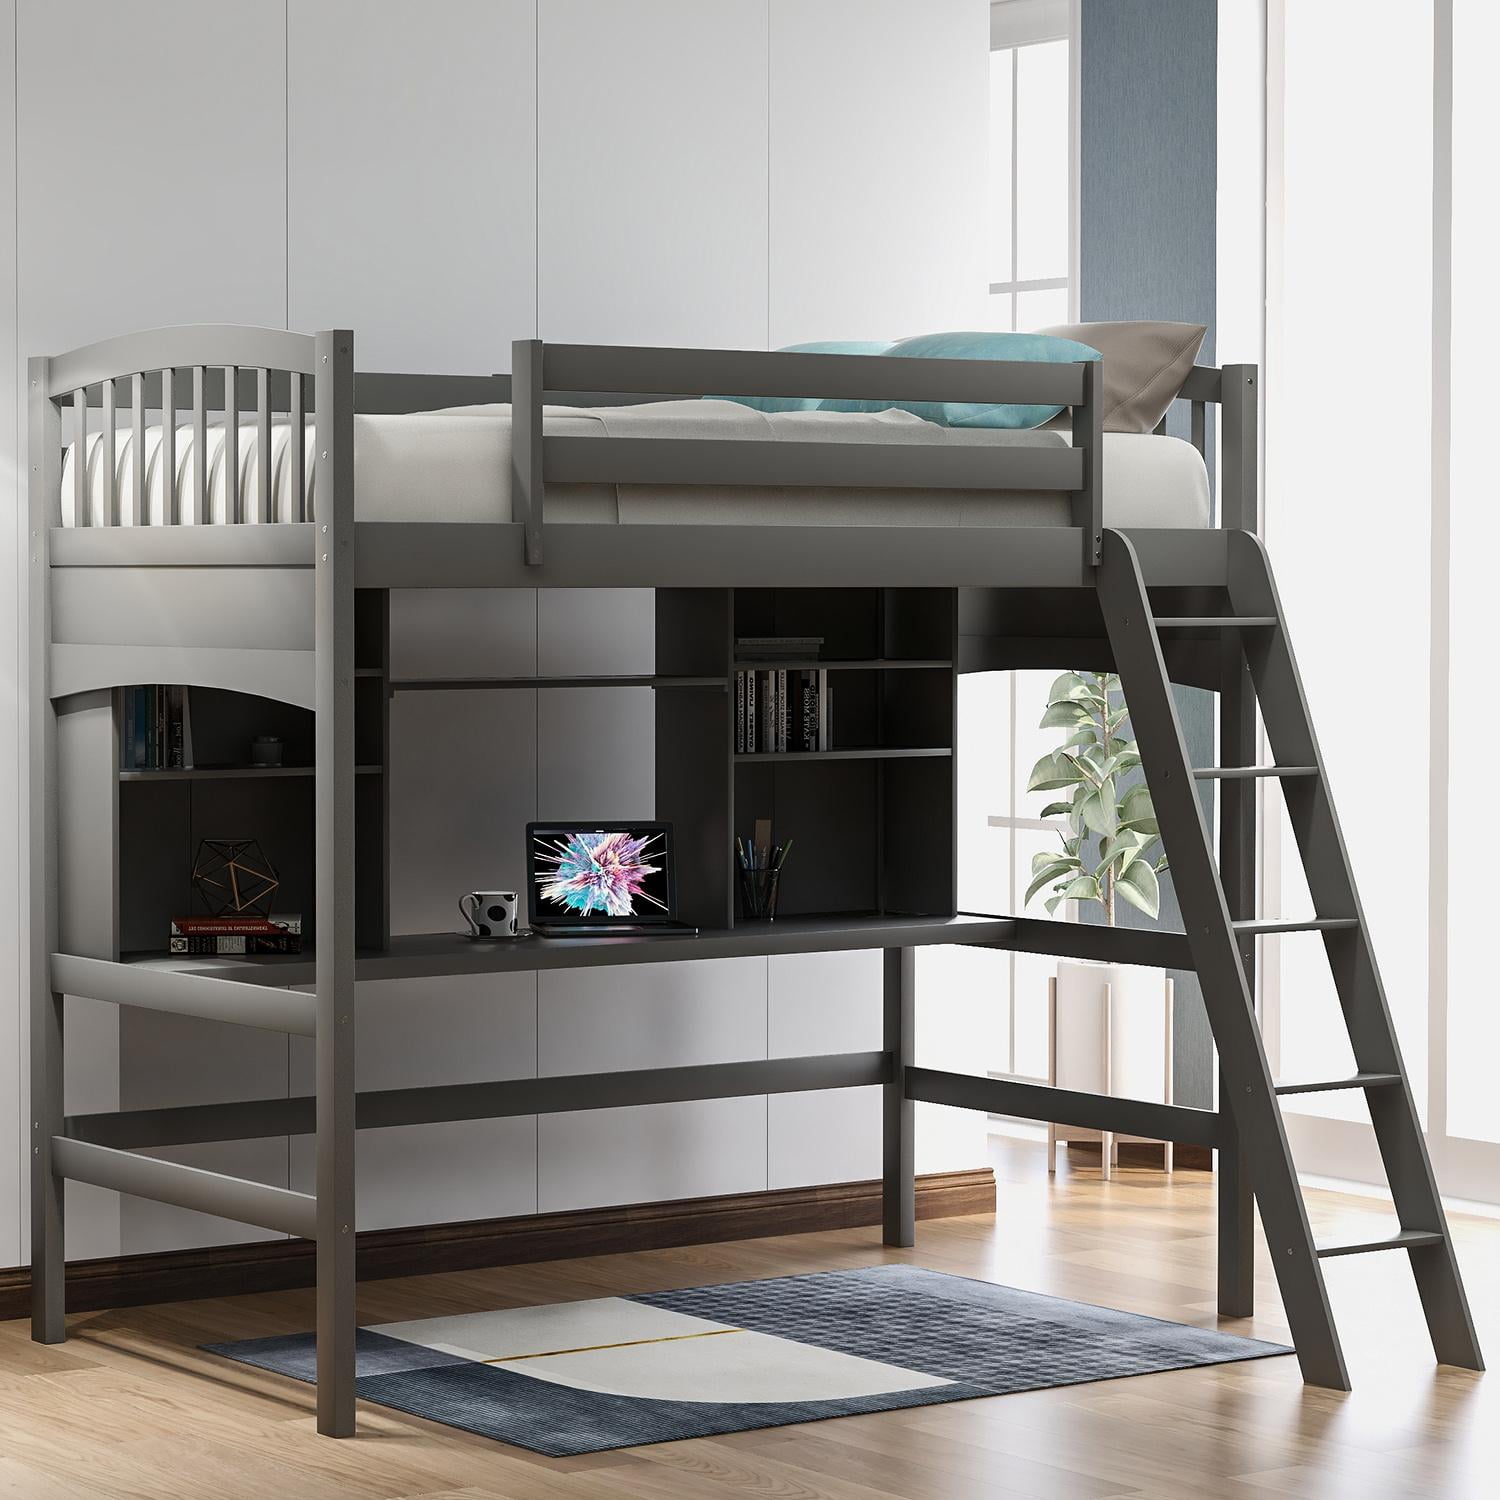 Desk Twin Size Study Loft Bed Frame, Wooden Loft Bed Frame